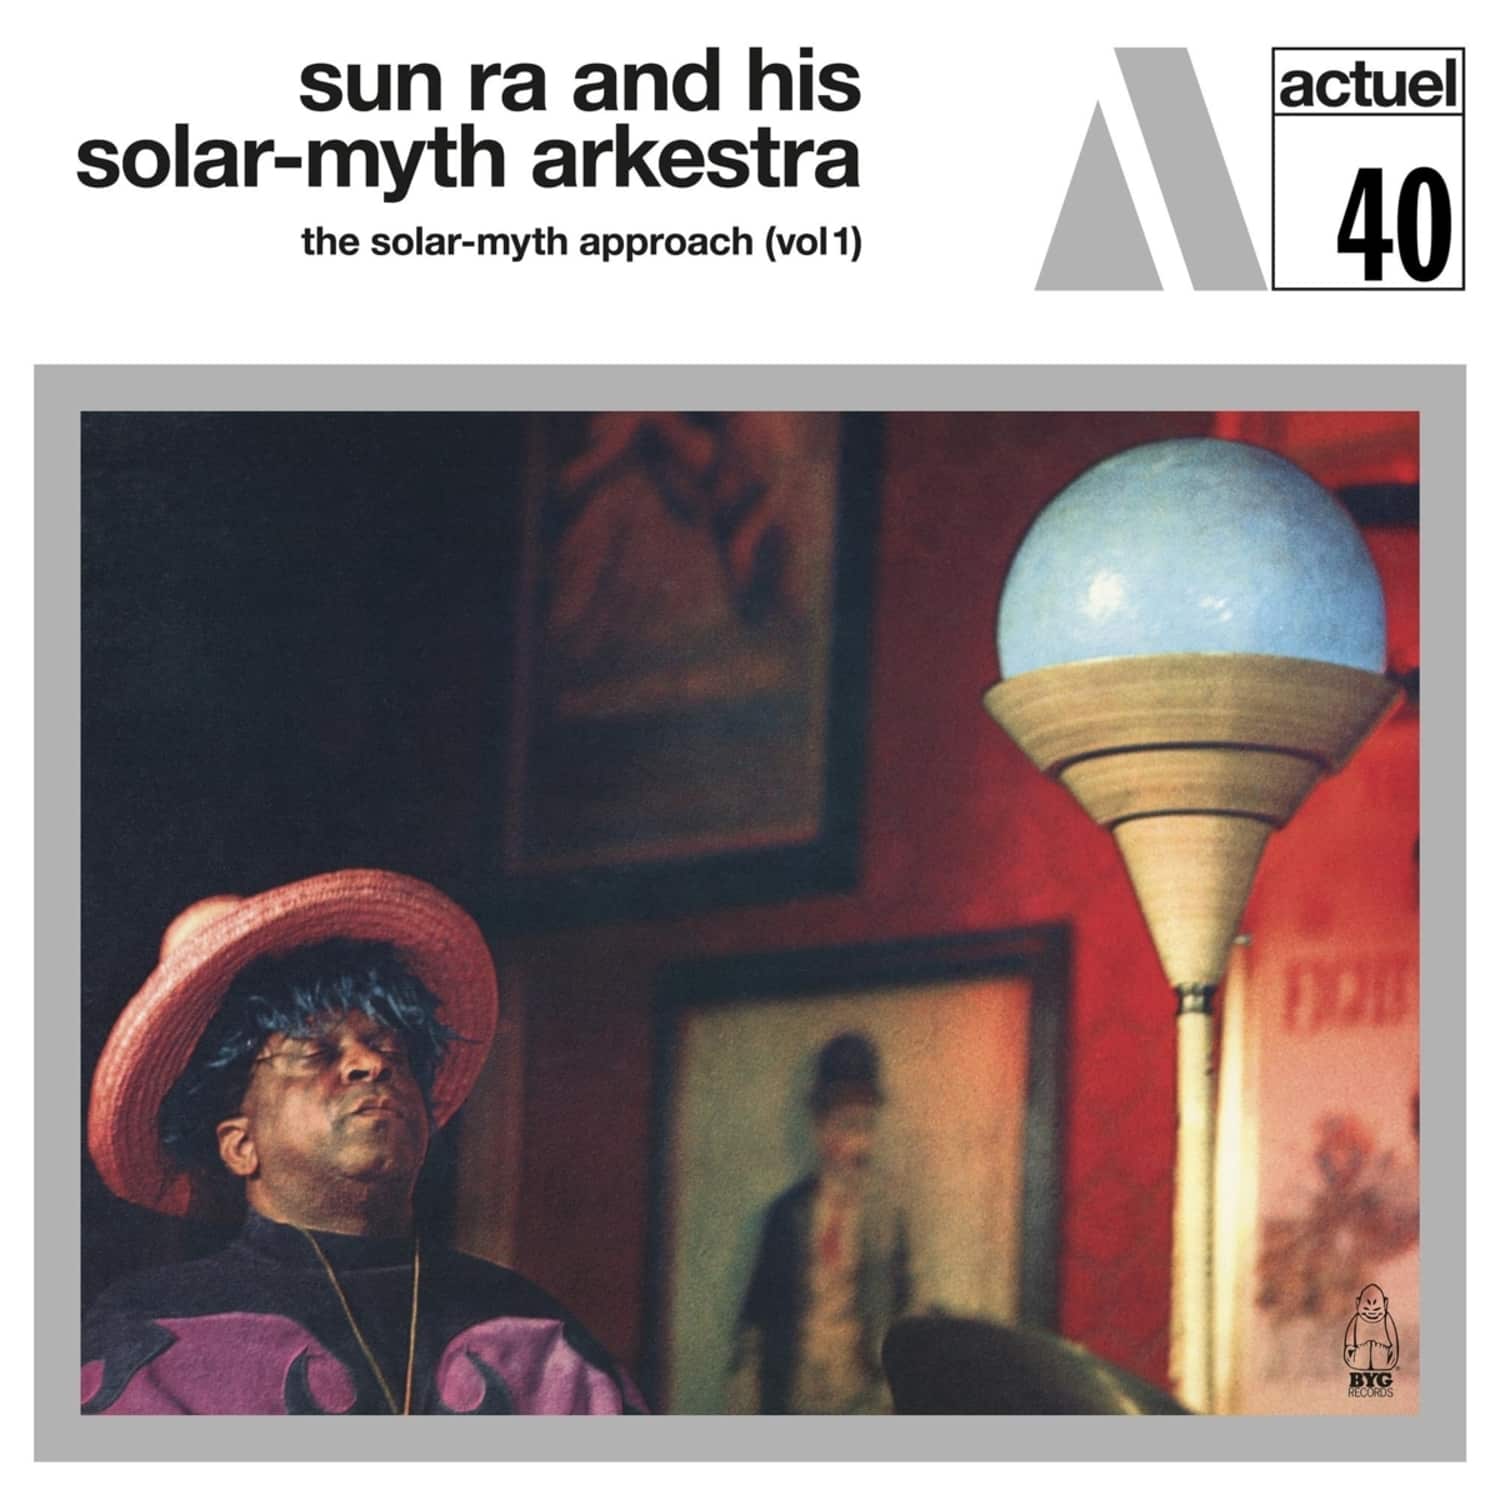 Sun Ra And His Solar-Myth Arkestra - SOLAR-MYTH APPROACH VOL.1 